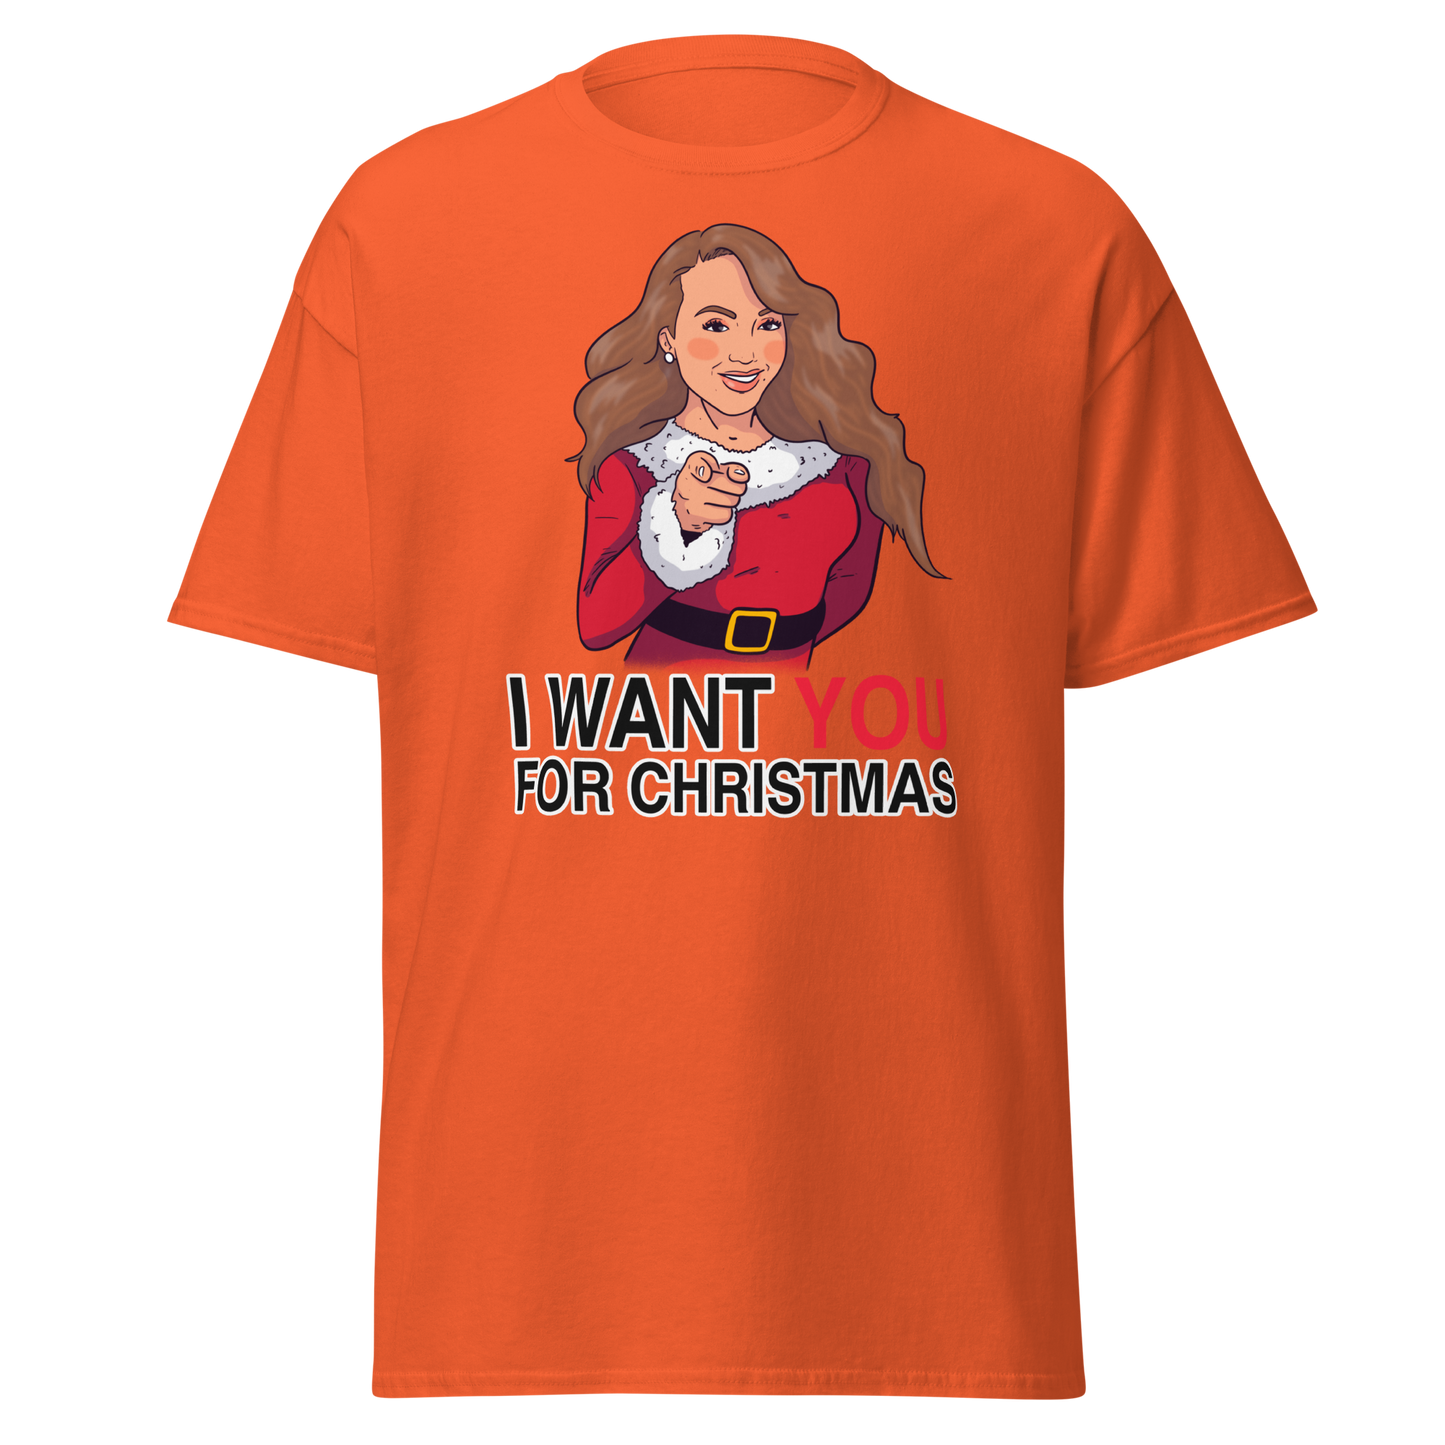 She Wants You T-Shirt